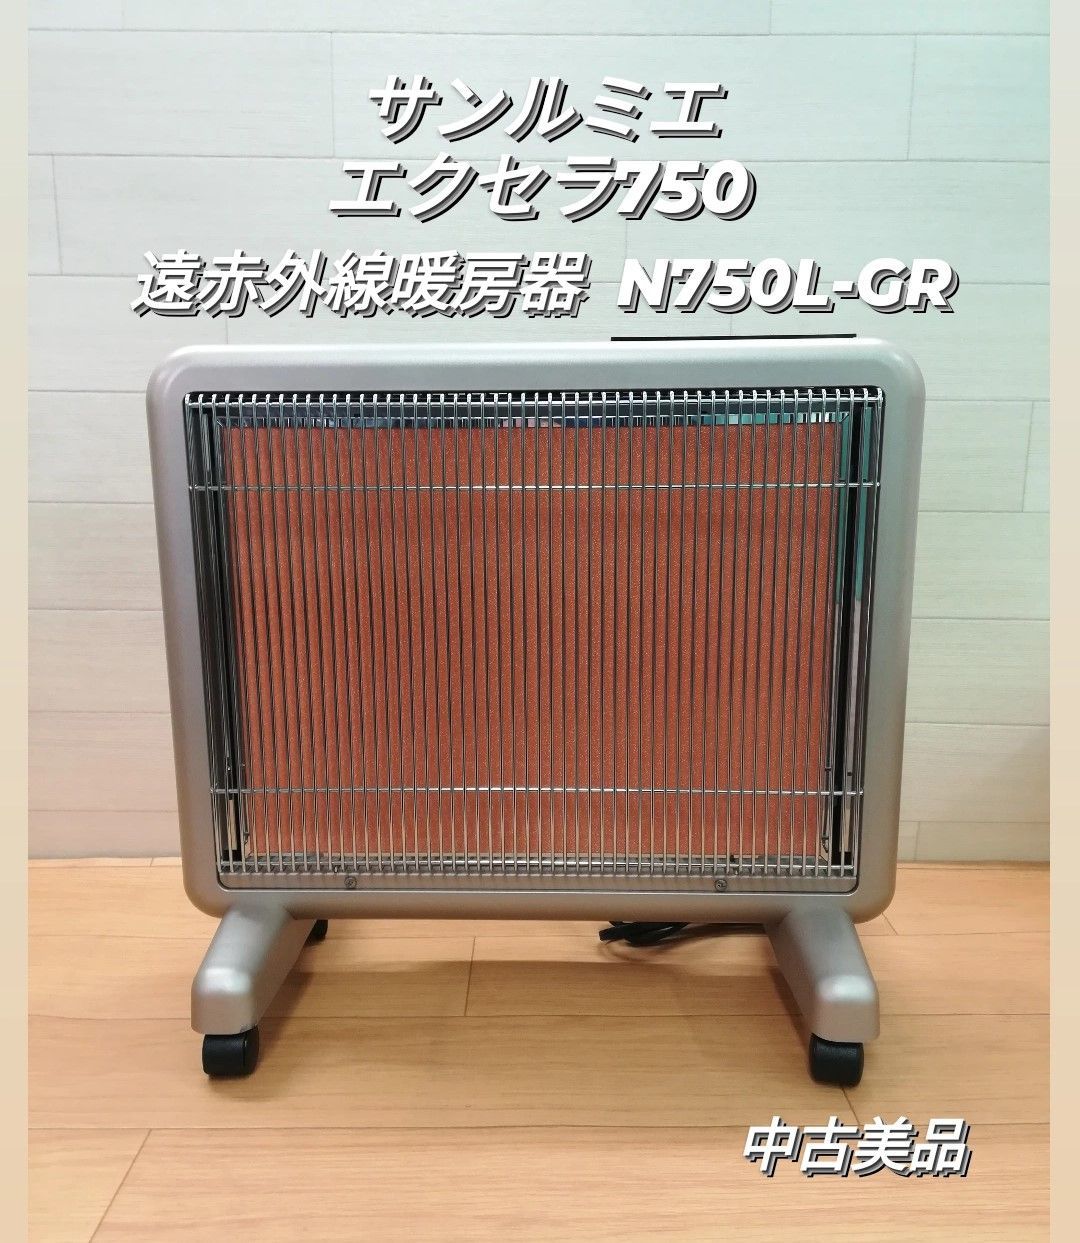 電気ヒーターサンルミエ エクセラ750 遠赤外線ヒーター N750L-GR 暖房